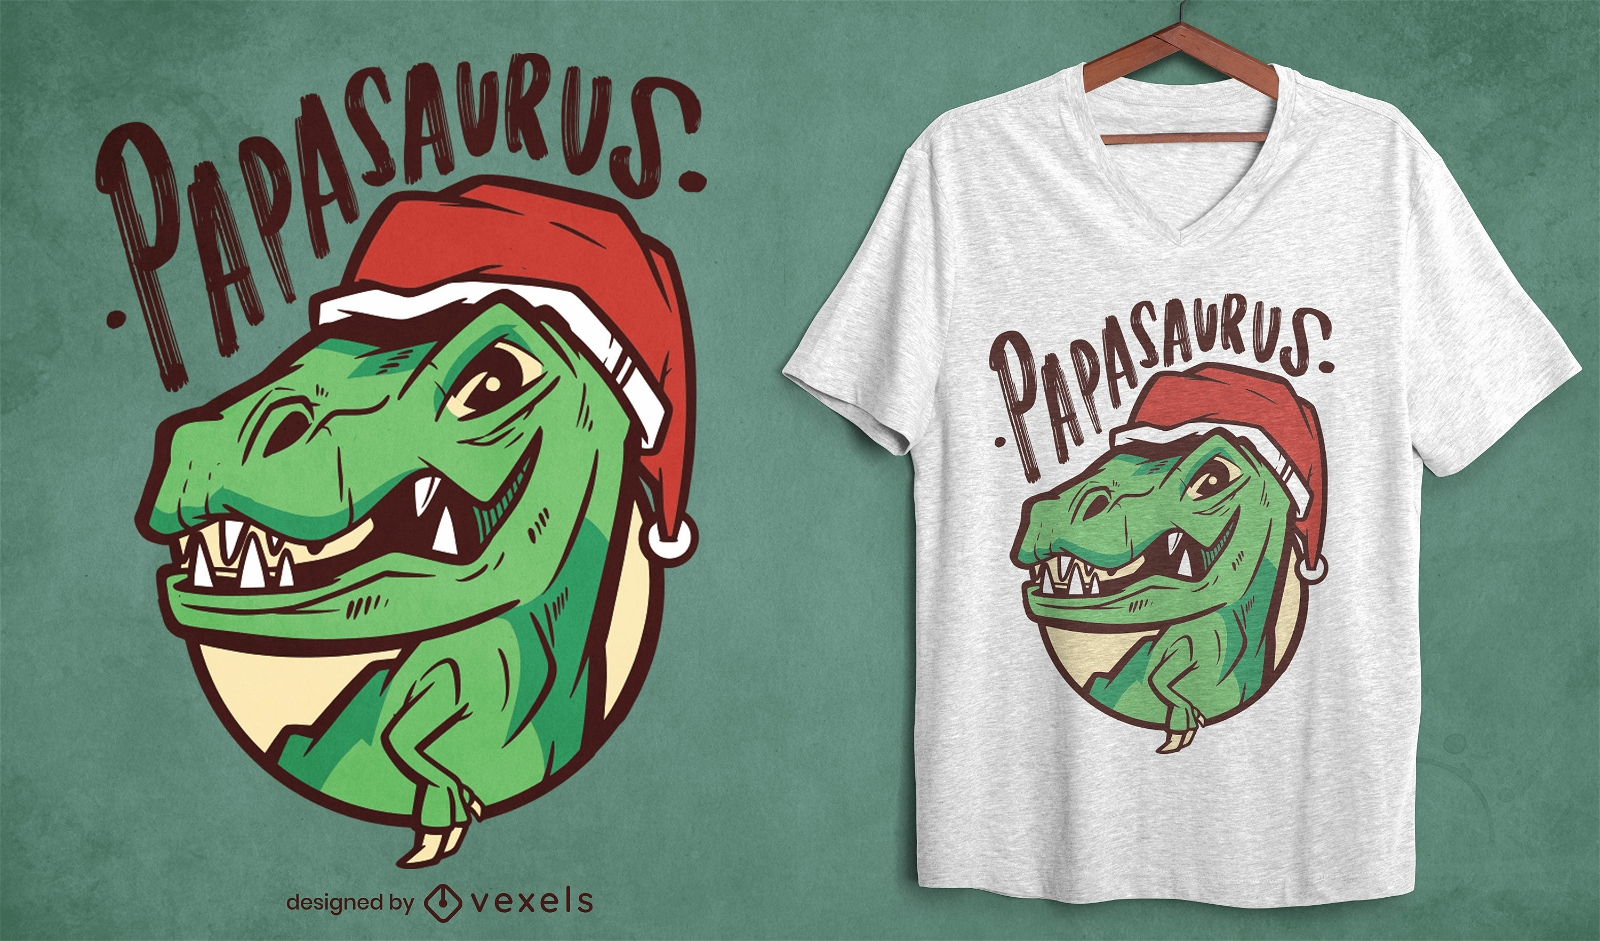 Papasaurus T-Rex Weihnachts-T-Shirt-Design